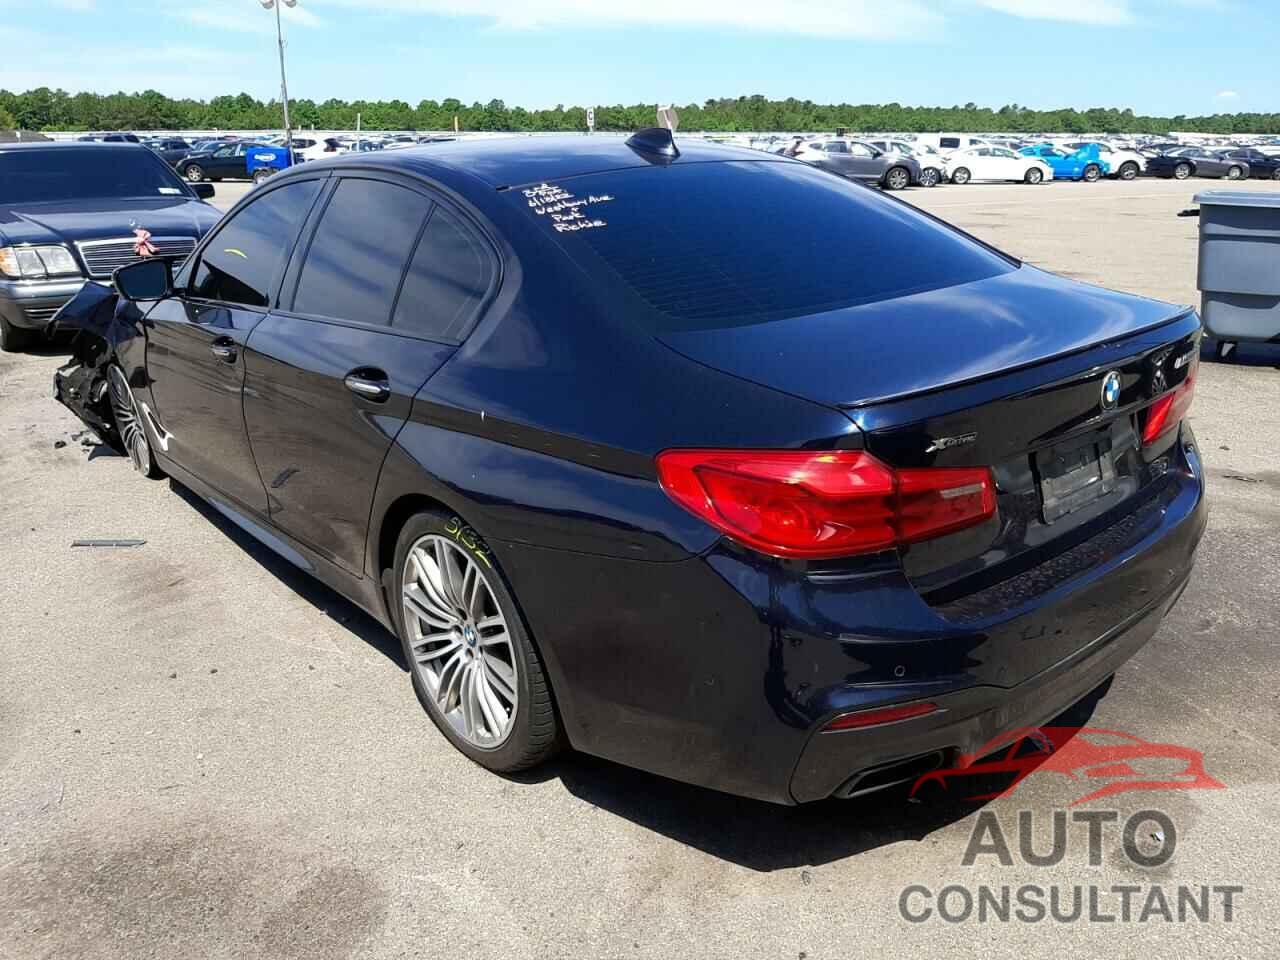 BMW M5 2018 - WBAJB9C56JG463857